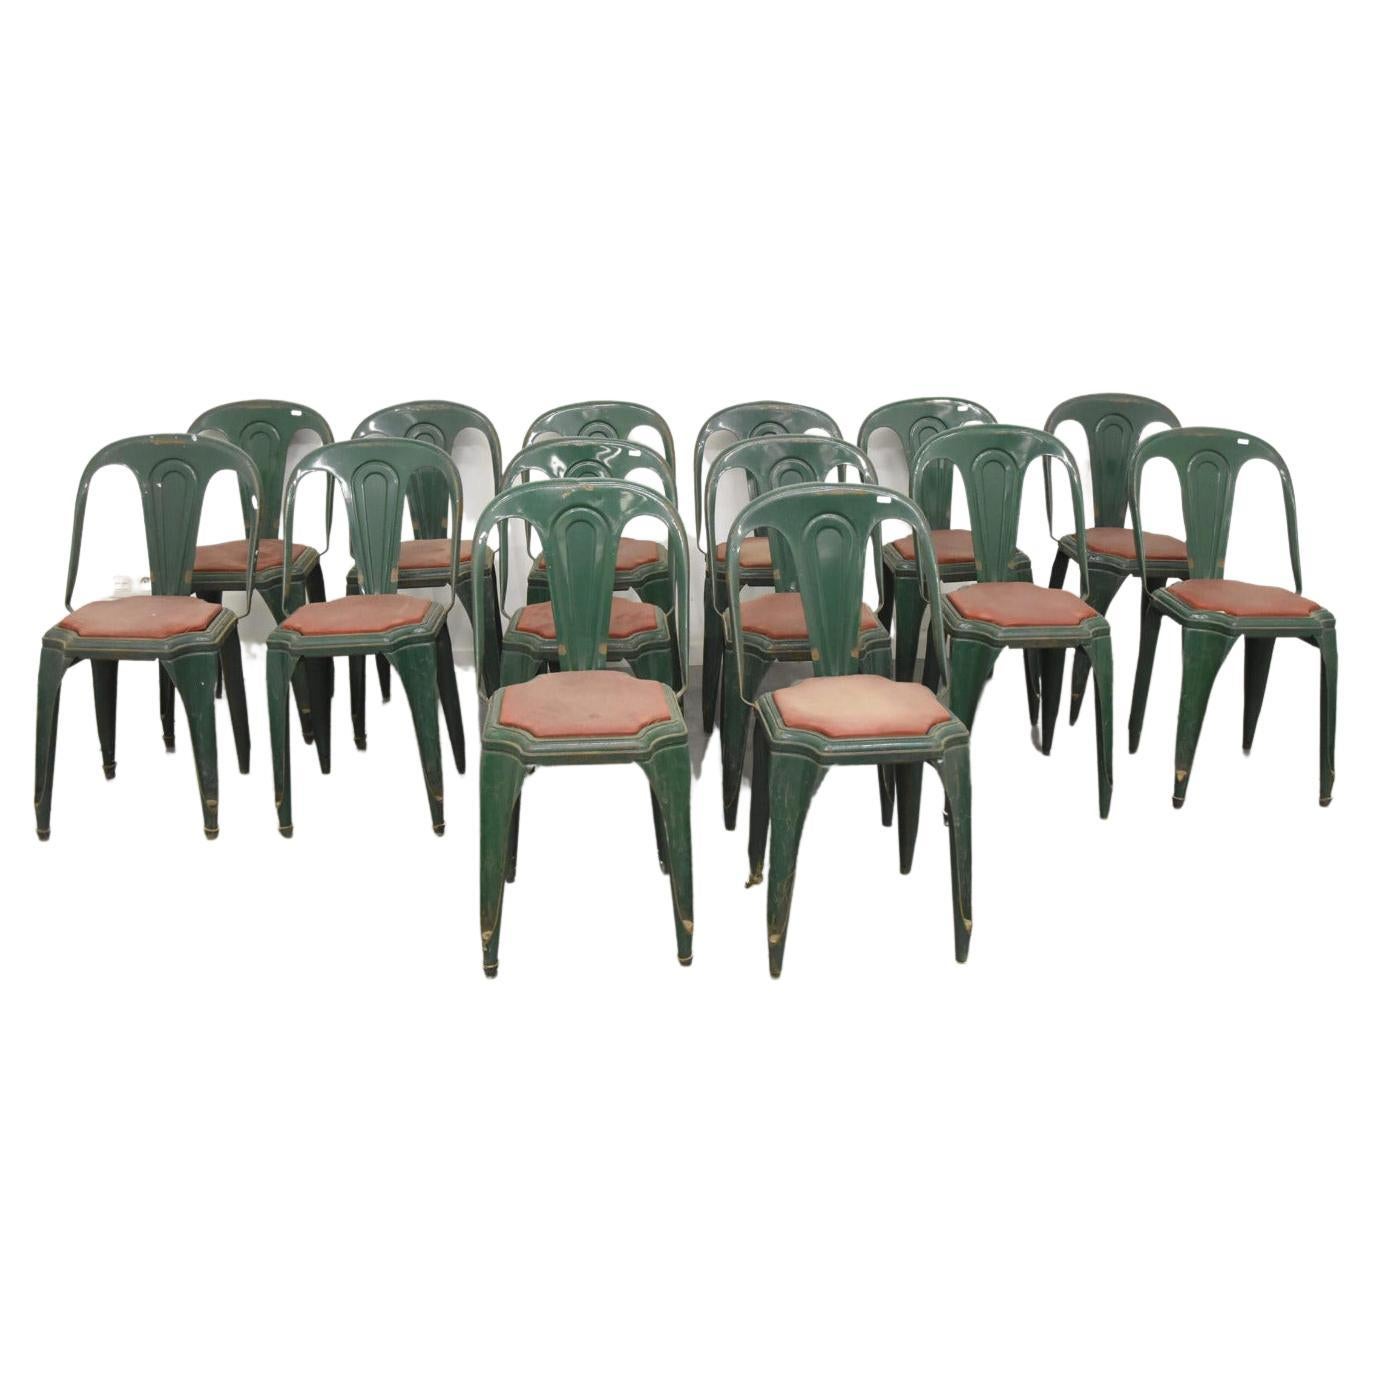 Suite de 14 chaises industrielles de la marque Fibrocit, datant d'environ 1950 en vente